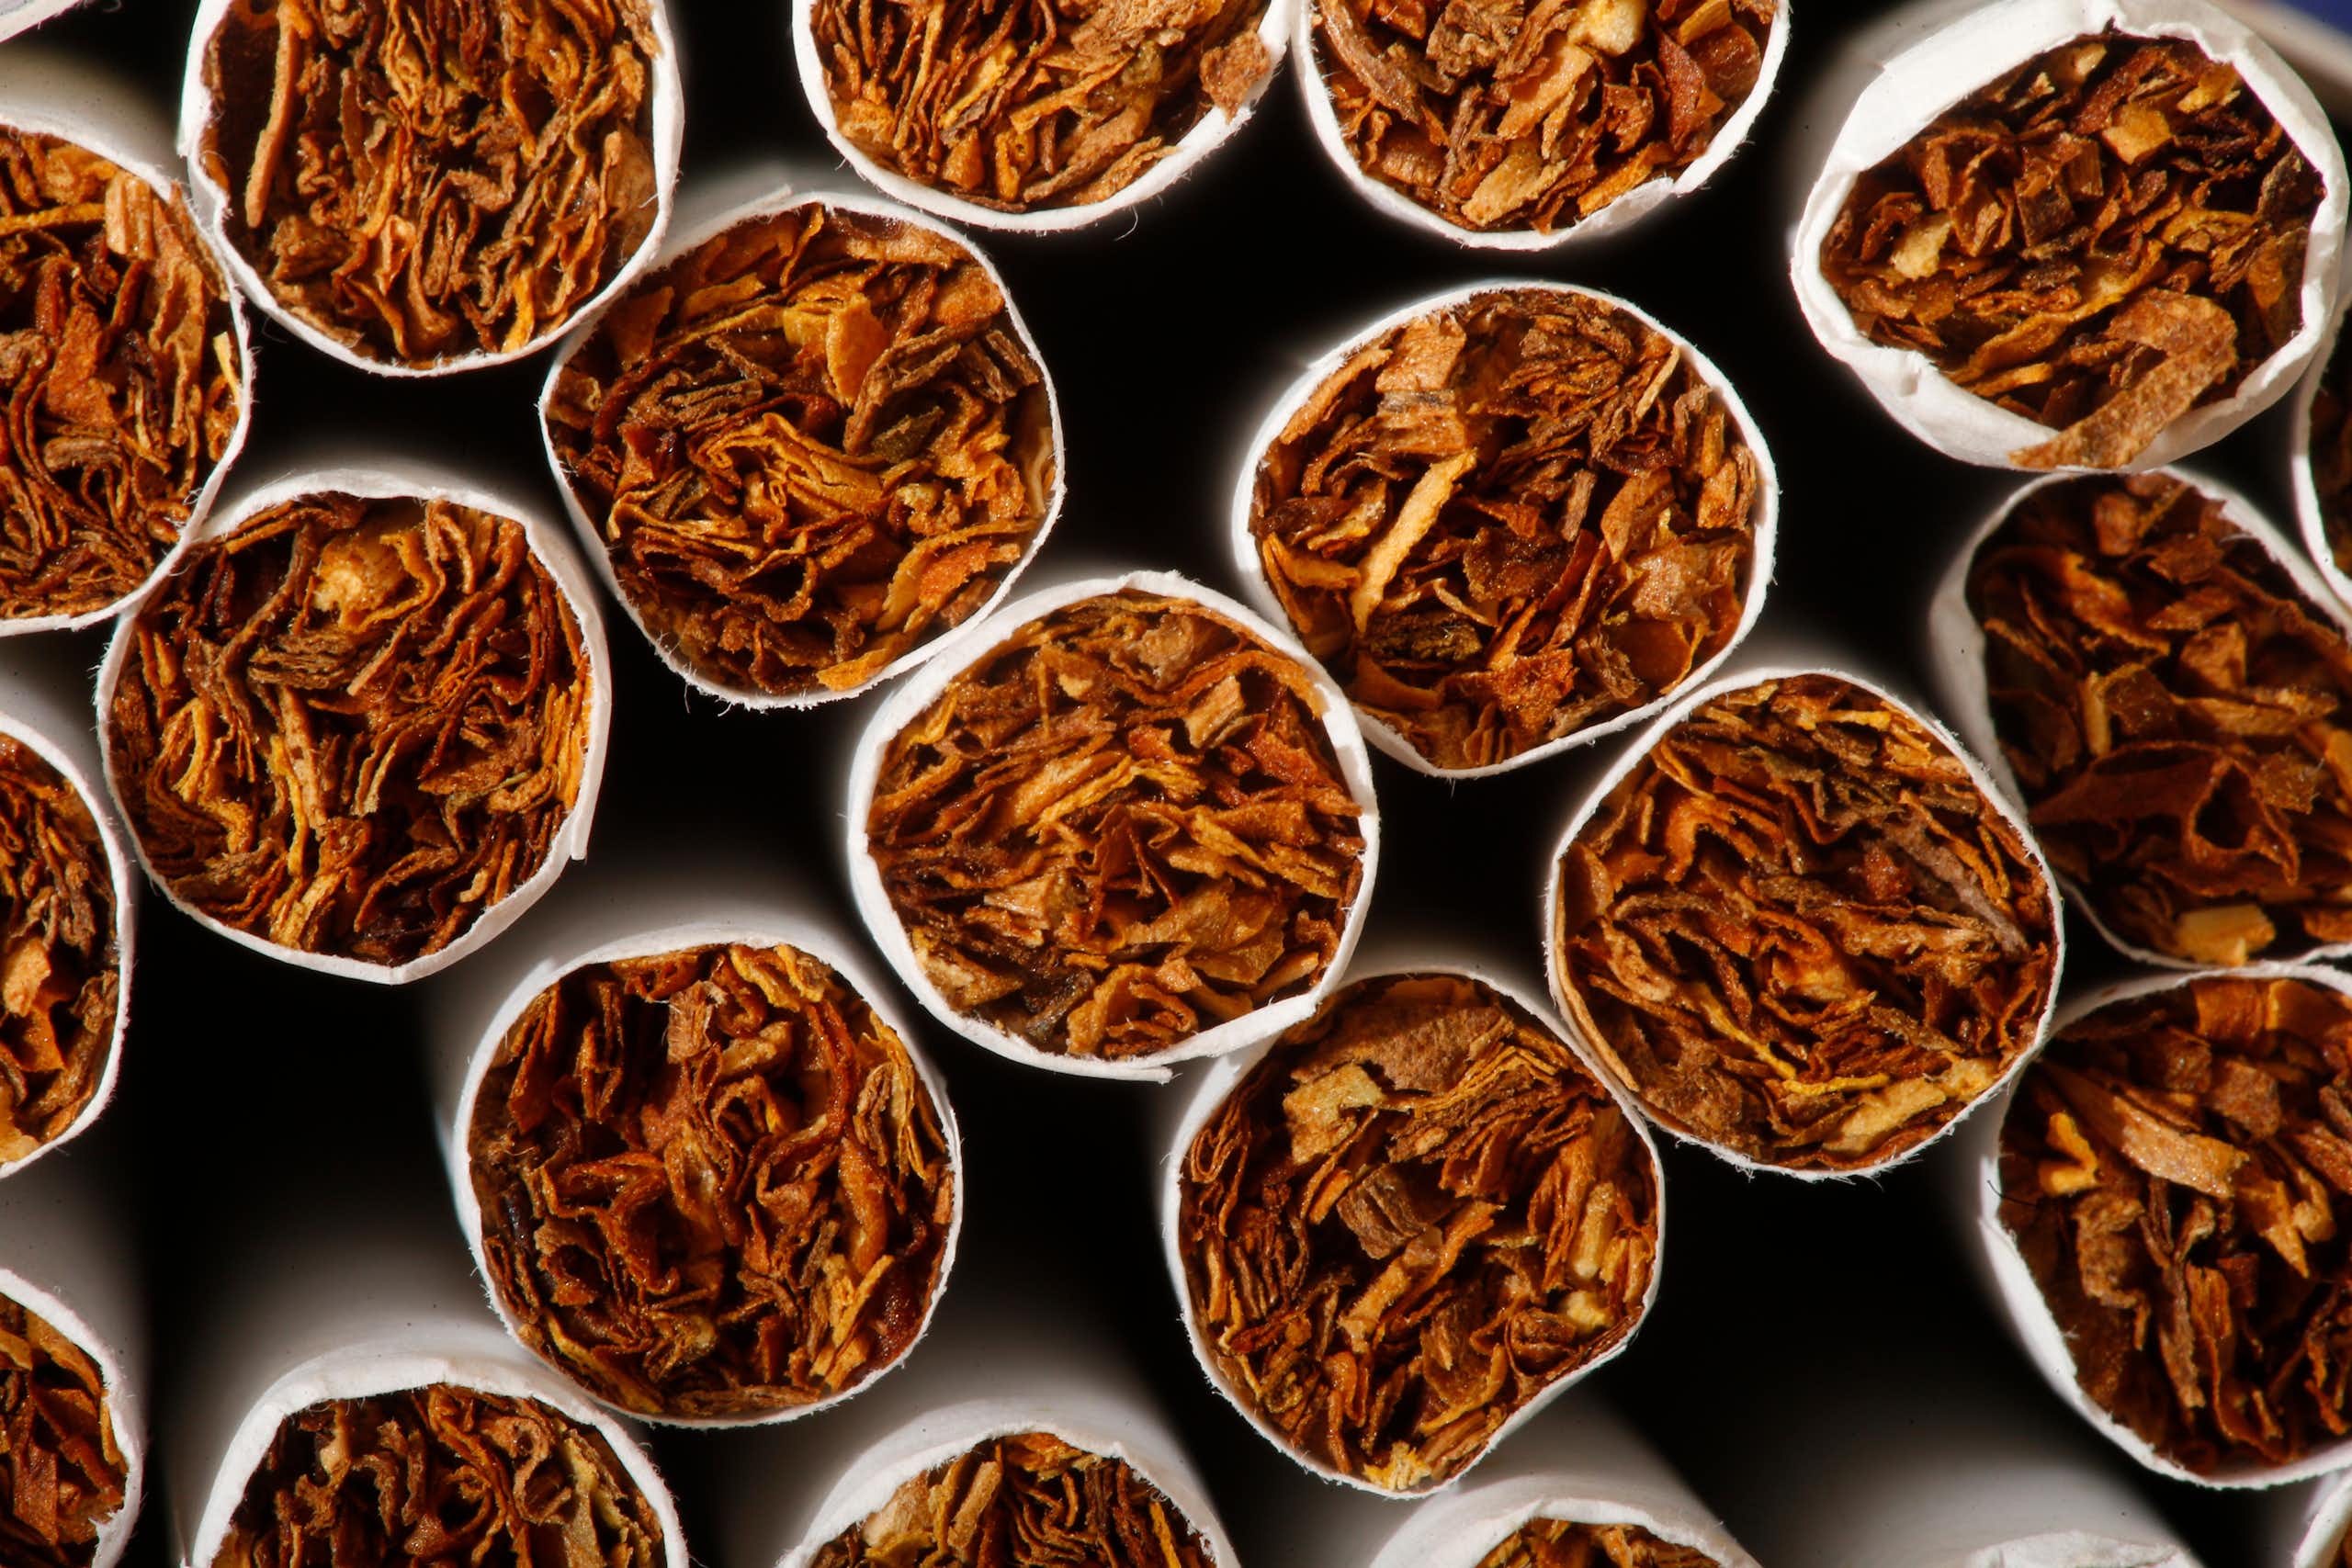 O tabaco altera a resposta imunológica mesmo anos depois de parar de fumar